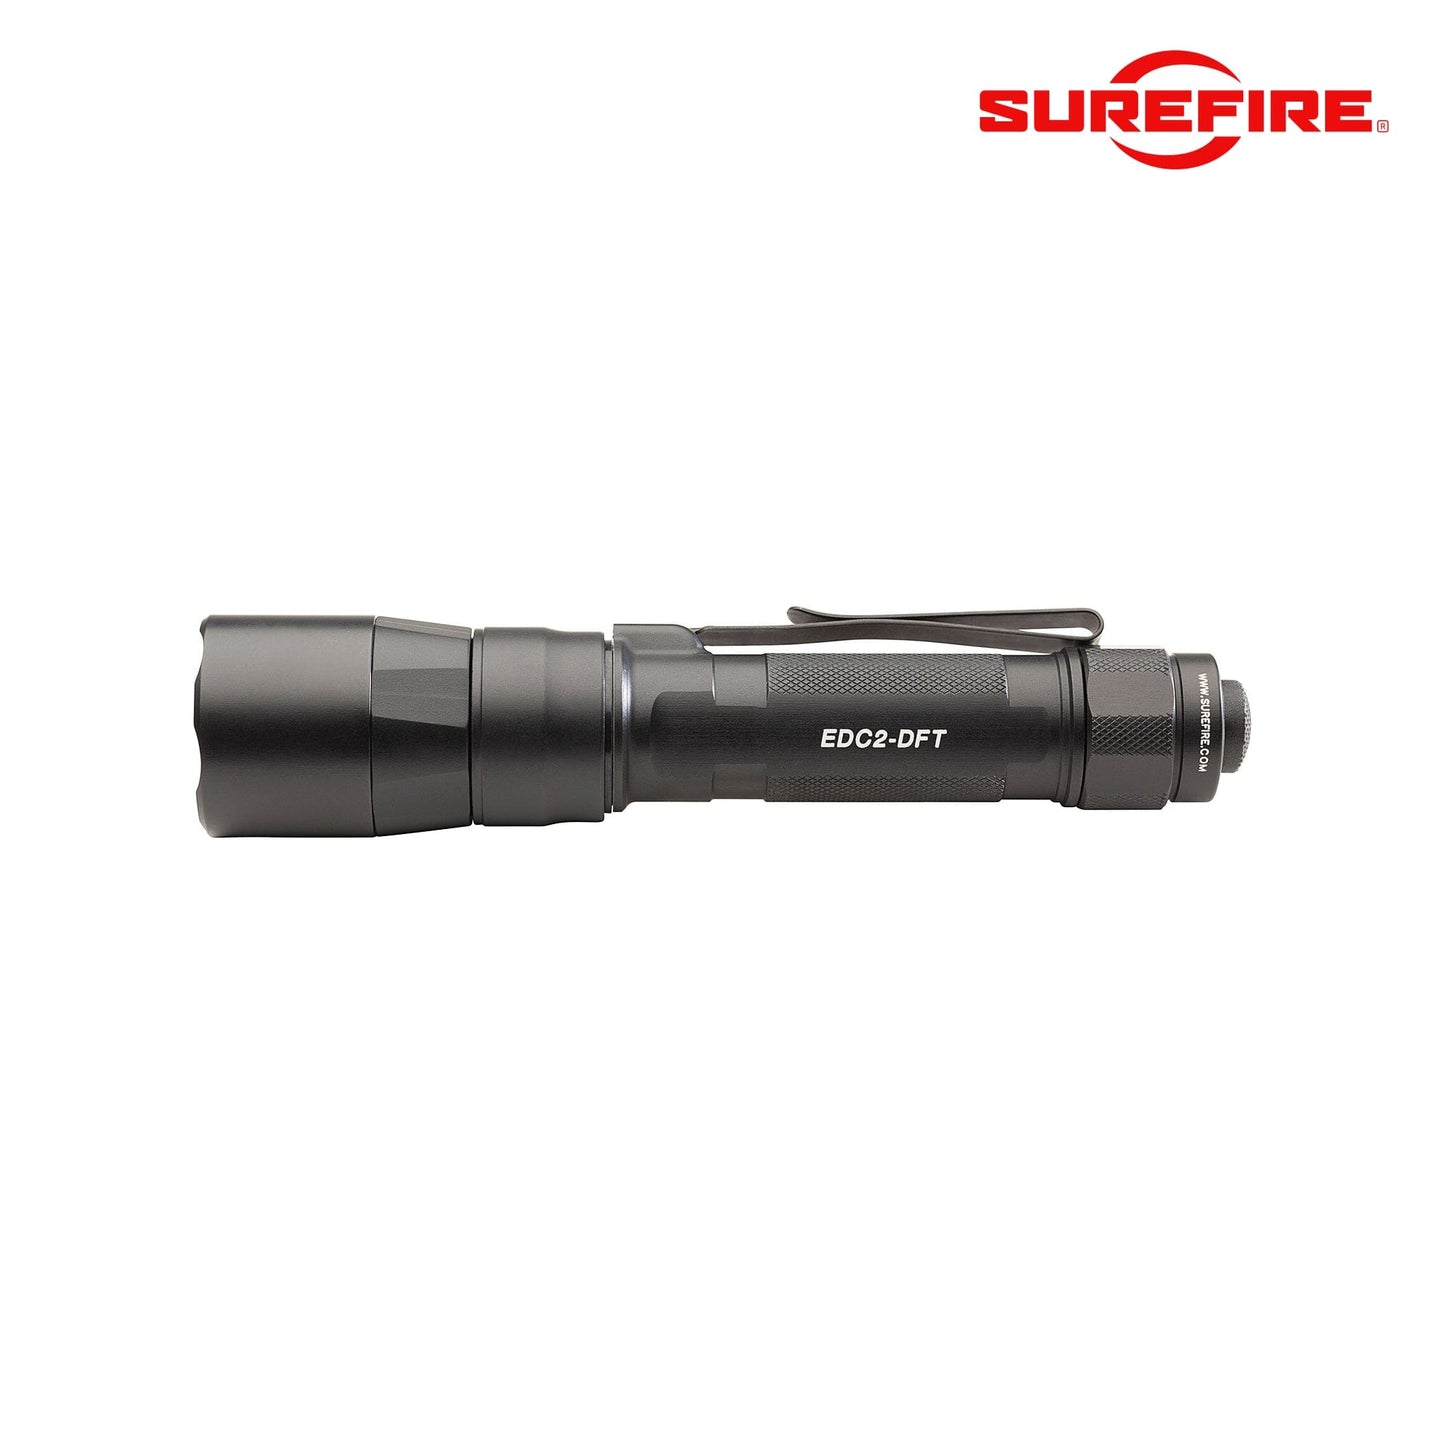 SureFire EDC2-DFT High-Candela Everyday Carry LED Flashlight Black Flashlight SureFire 